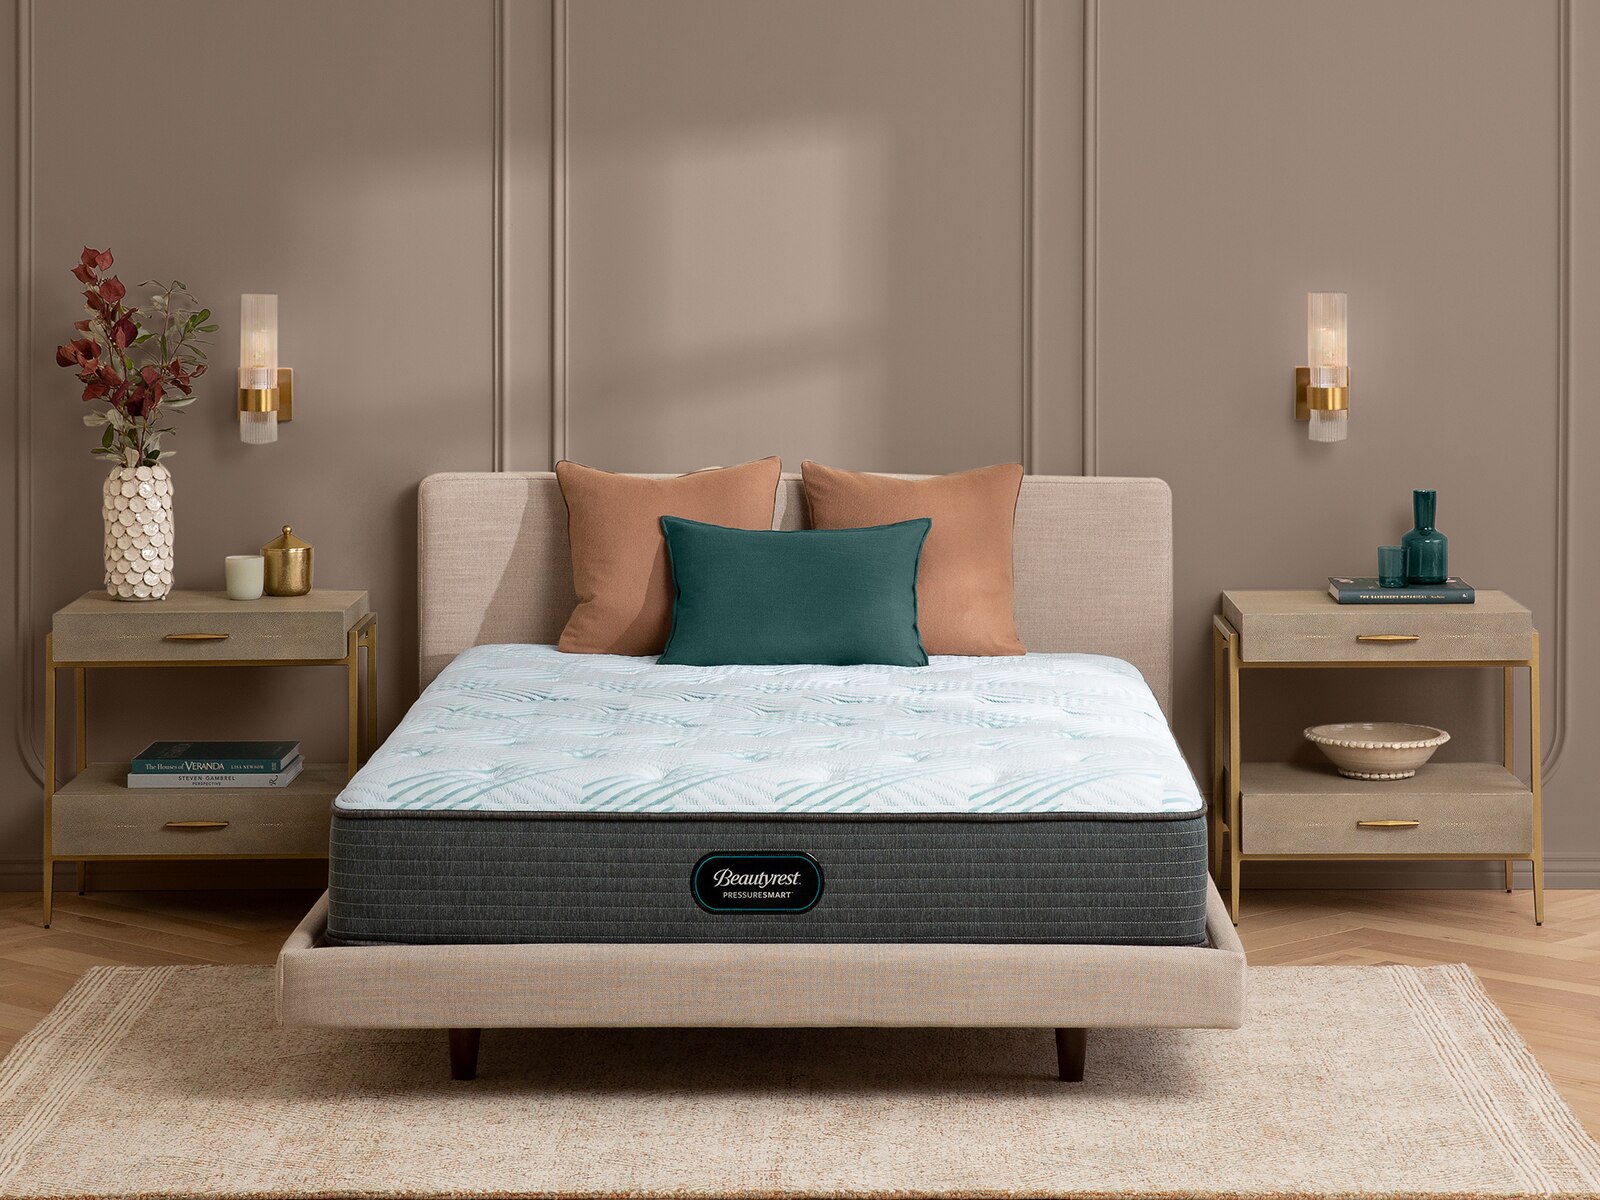 pressuresmart 11.5 firm mattress queen reviews